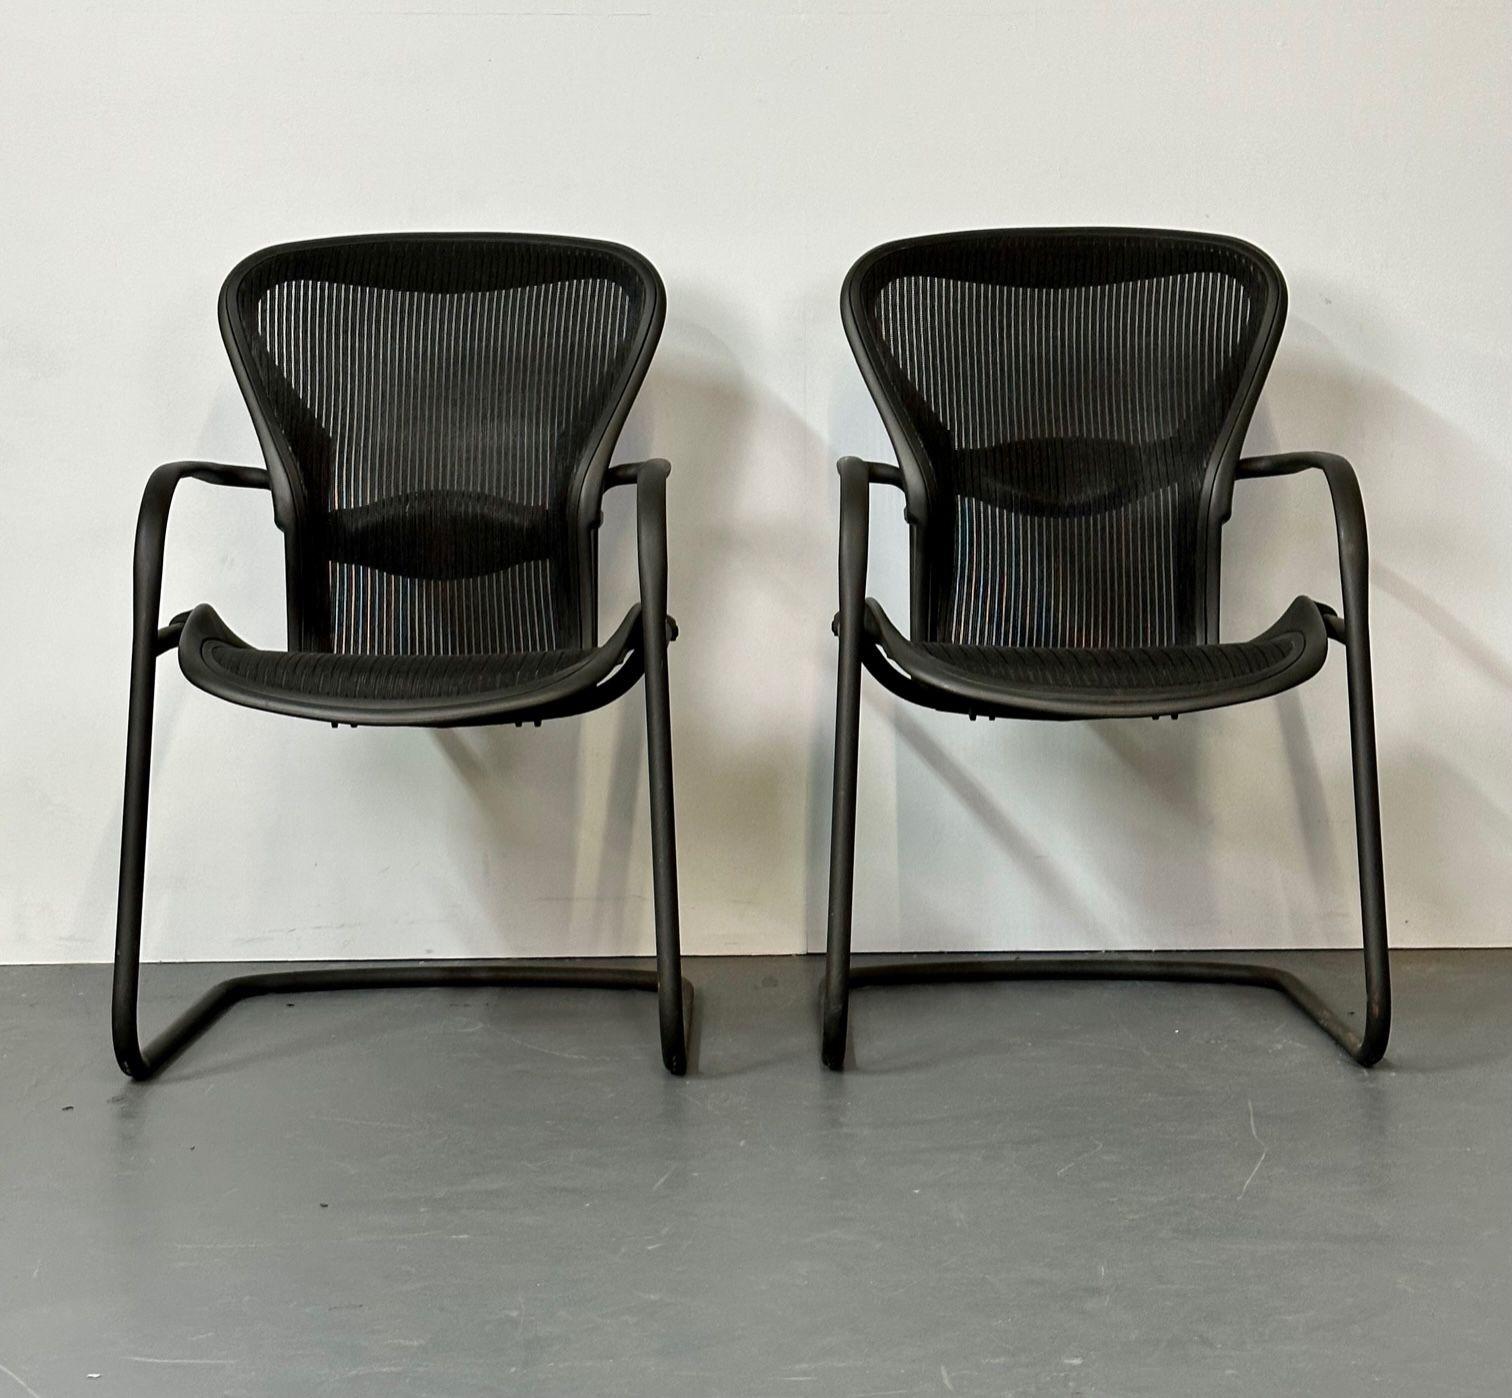 Miller Eames Modèle EA 435 fauteuil de direction groupe aluminium cuir noir soft pad.
 
Fauteuil de direction Herman Miller Eames modèle EA 435, groupe aluminium, cuir noir soft pad. Une paire sur roulettes pour Herman Miller. Le siège est en cuir